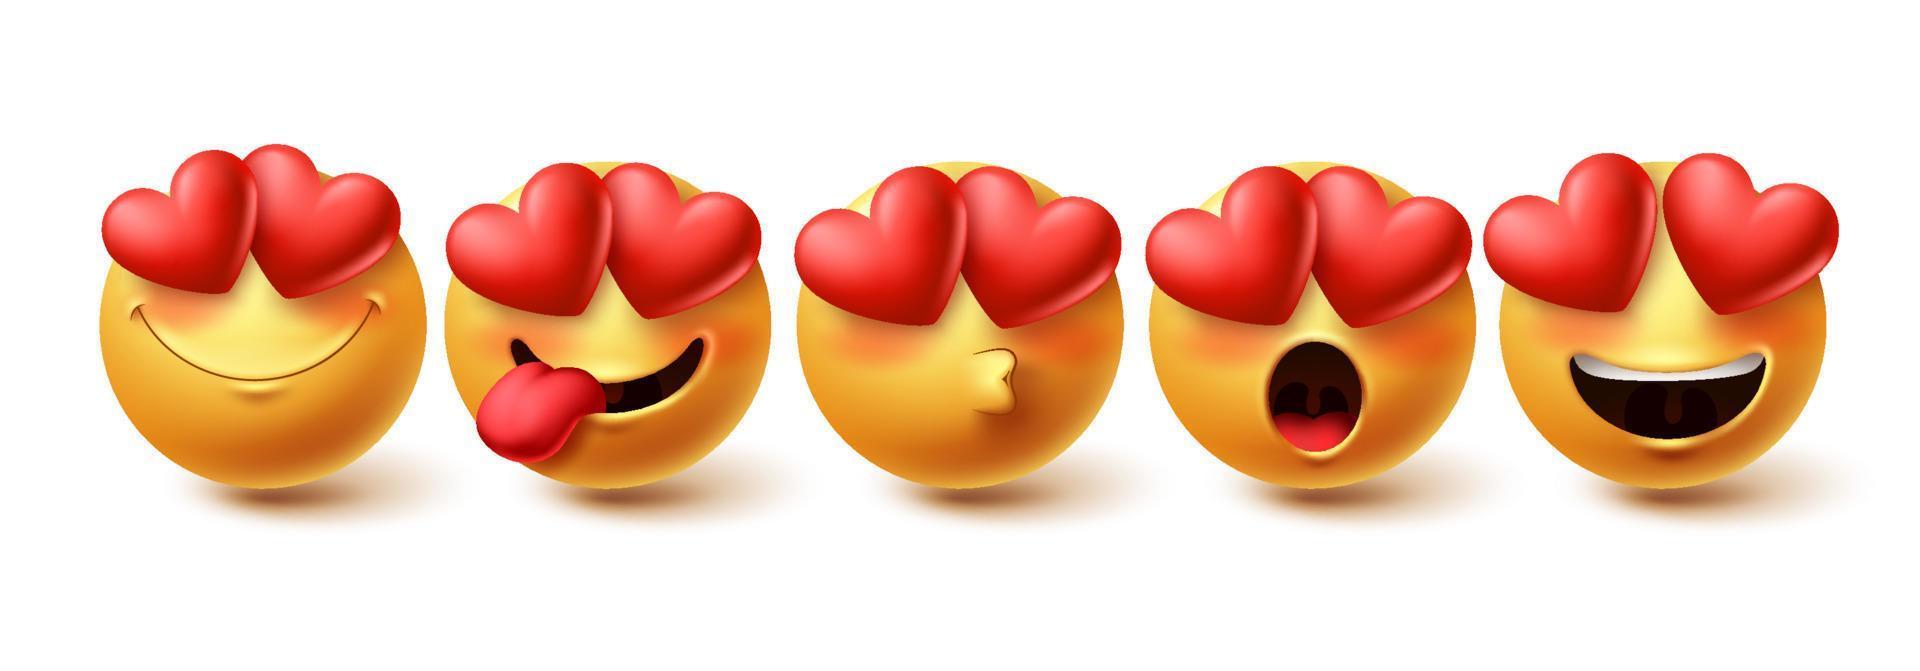 Emoji im Liebesgesichtsvektorsatz. Gelbe Emojis in fröhlichen, errötenden, küssenden und verliebten Gesichtsausdrücken einzeln auf weißem Hintergrund für Designelemente. Vektor-Illustration vektor